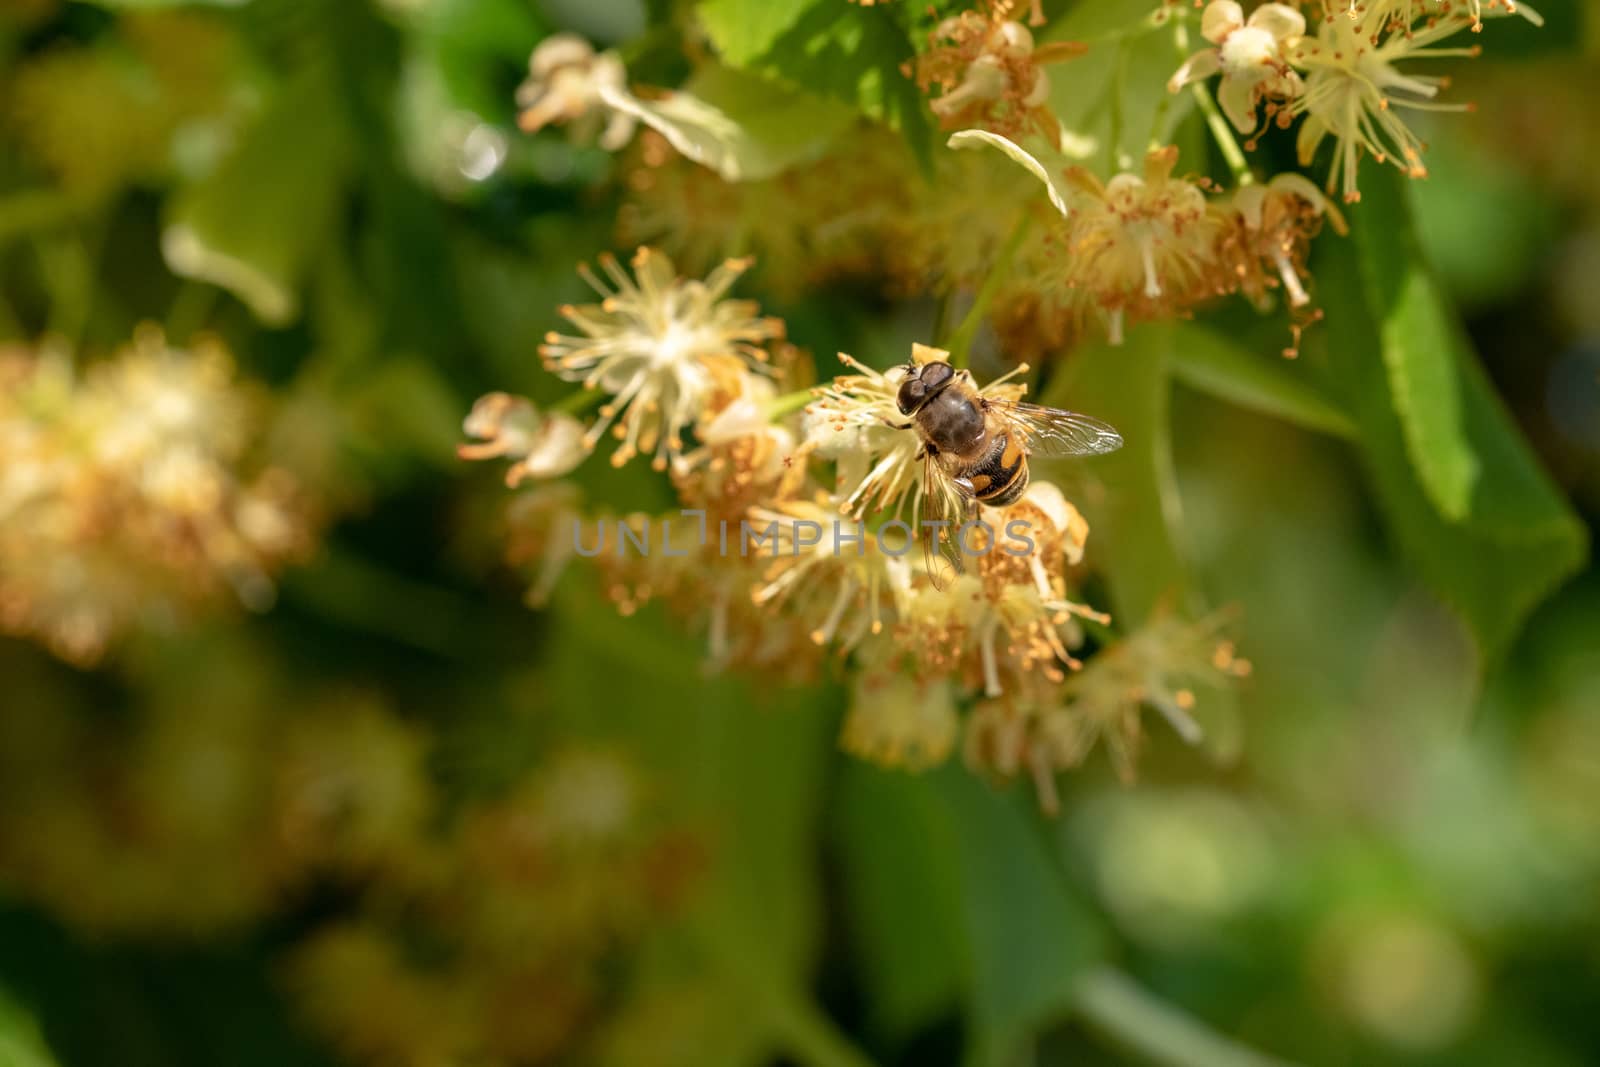 Hover fly sitting linden leaf, close up macro shot